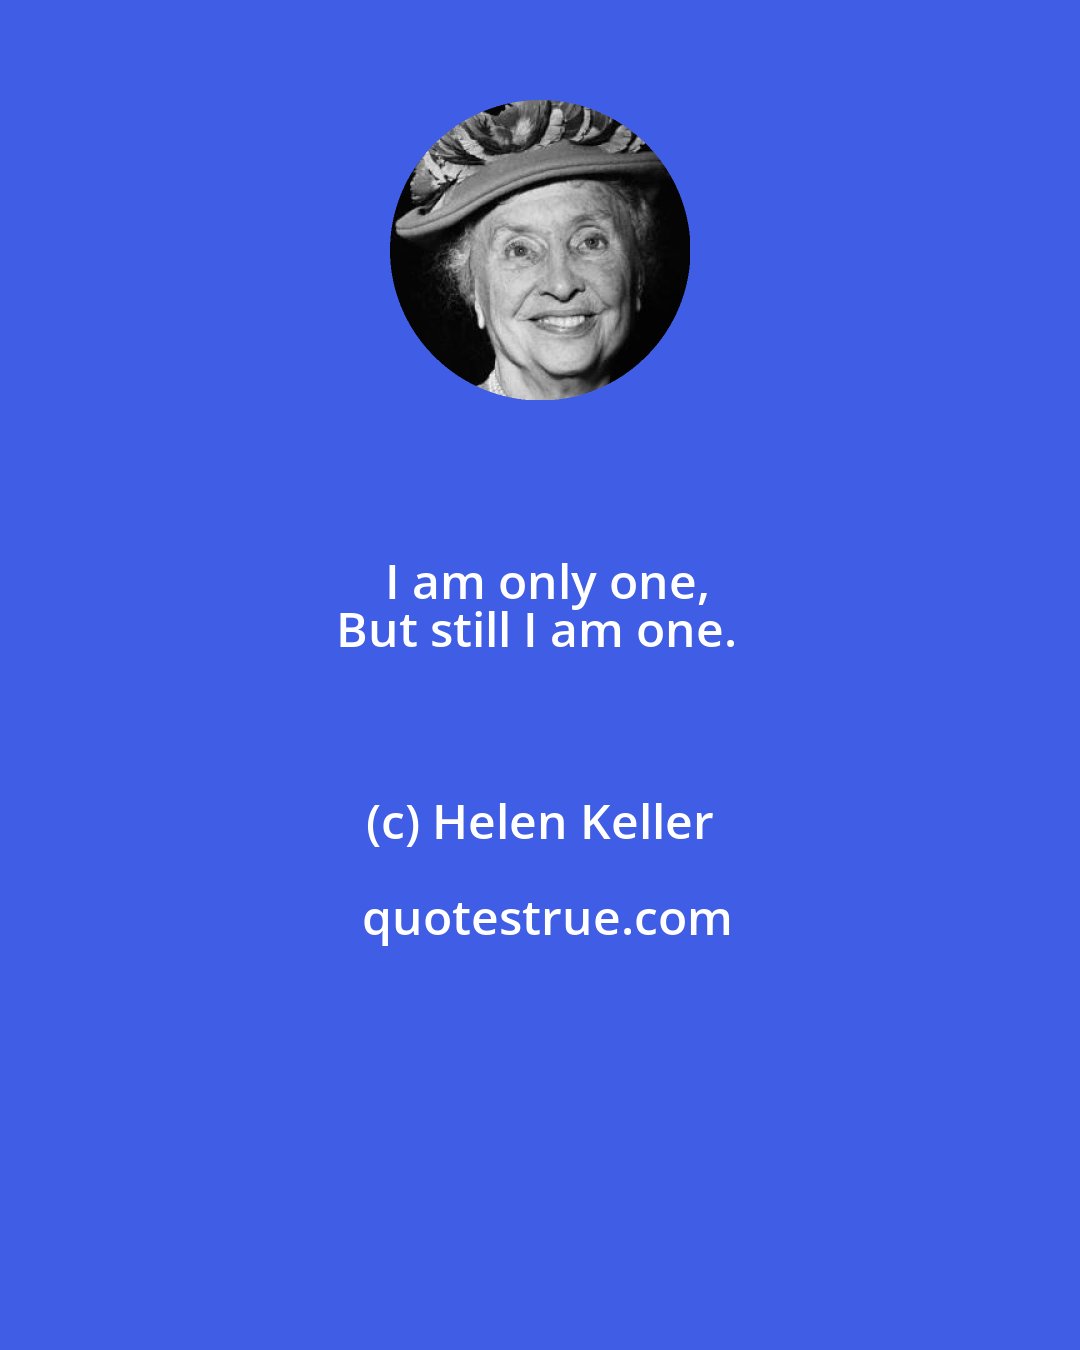 Helen Keller: I am only one,
But still I am one.